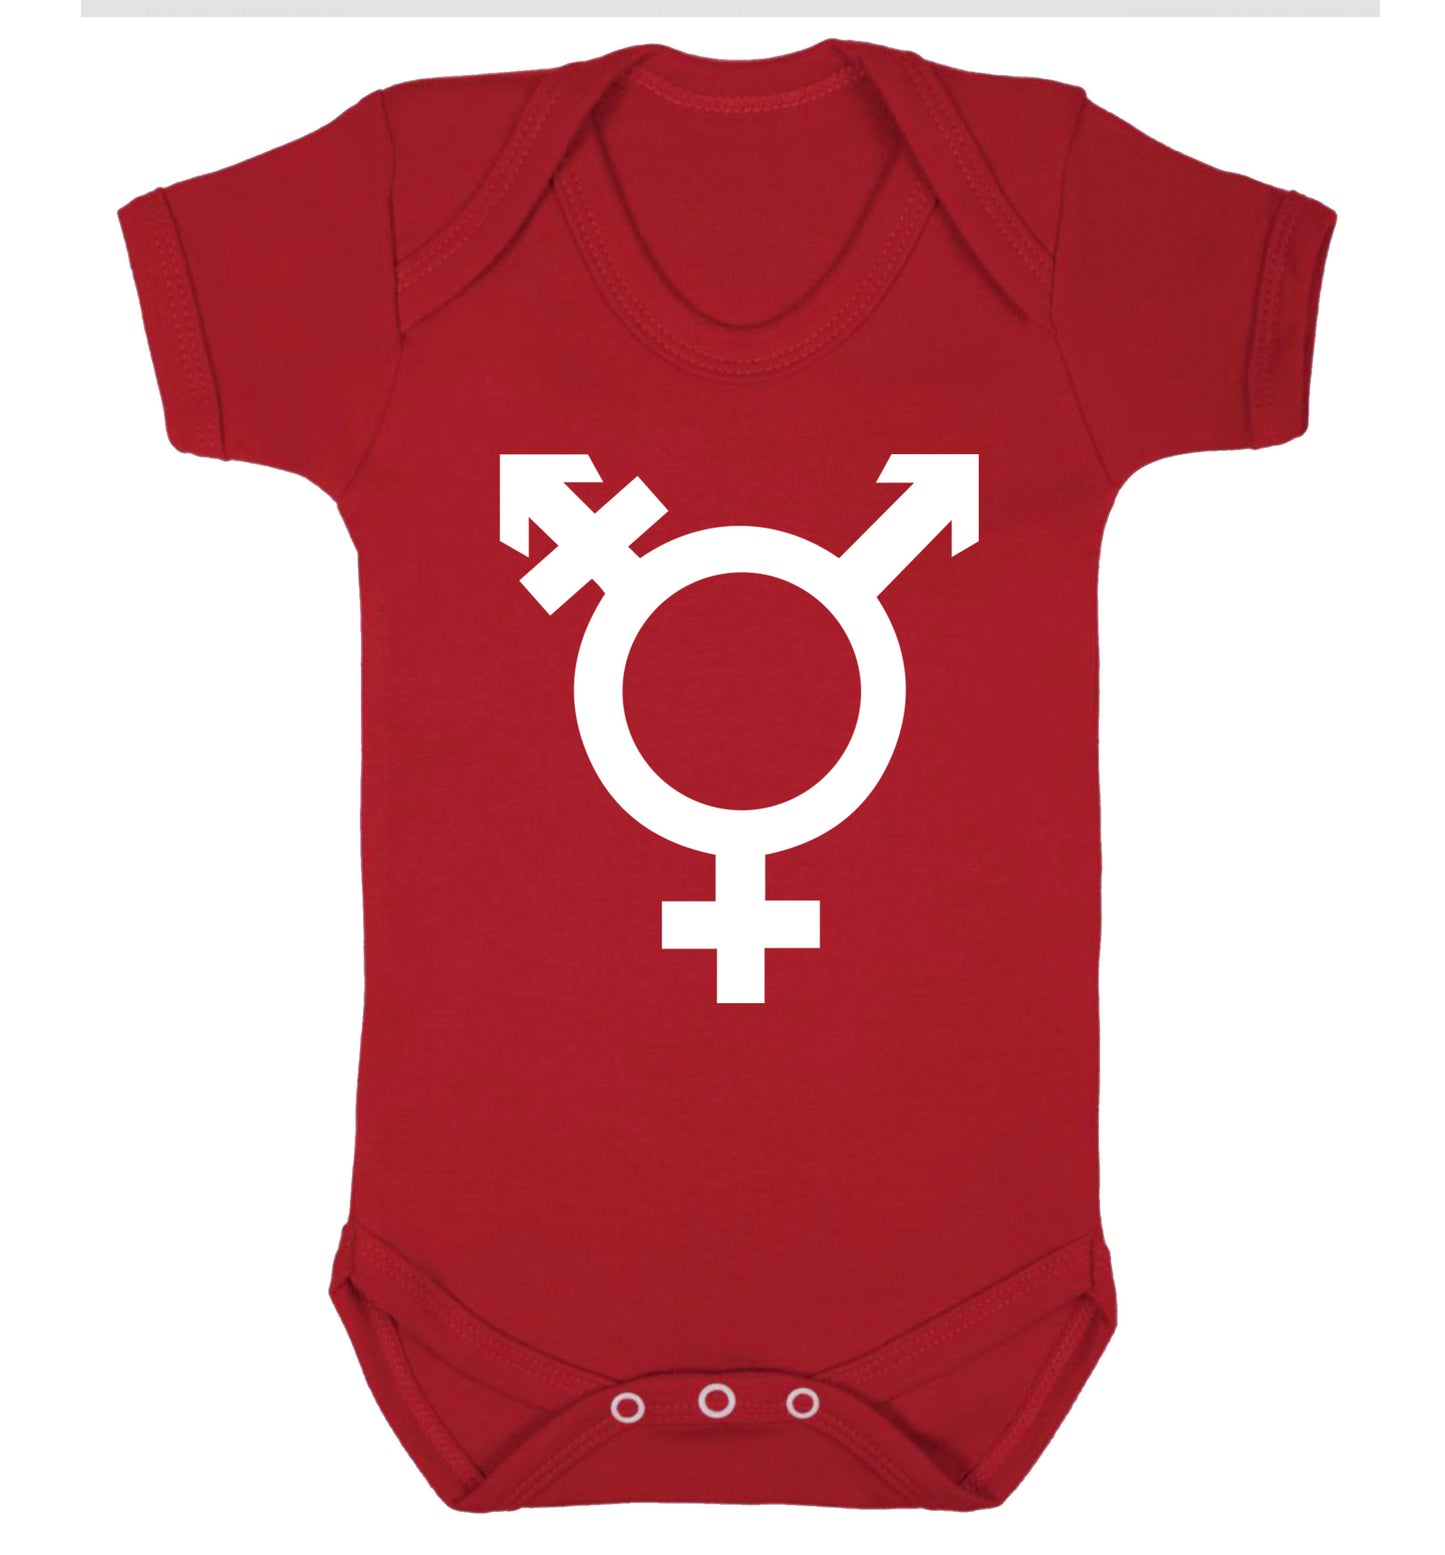 Gender neutral symbol large Baby Vest red 18-24 months